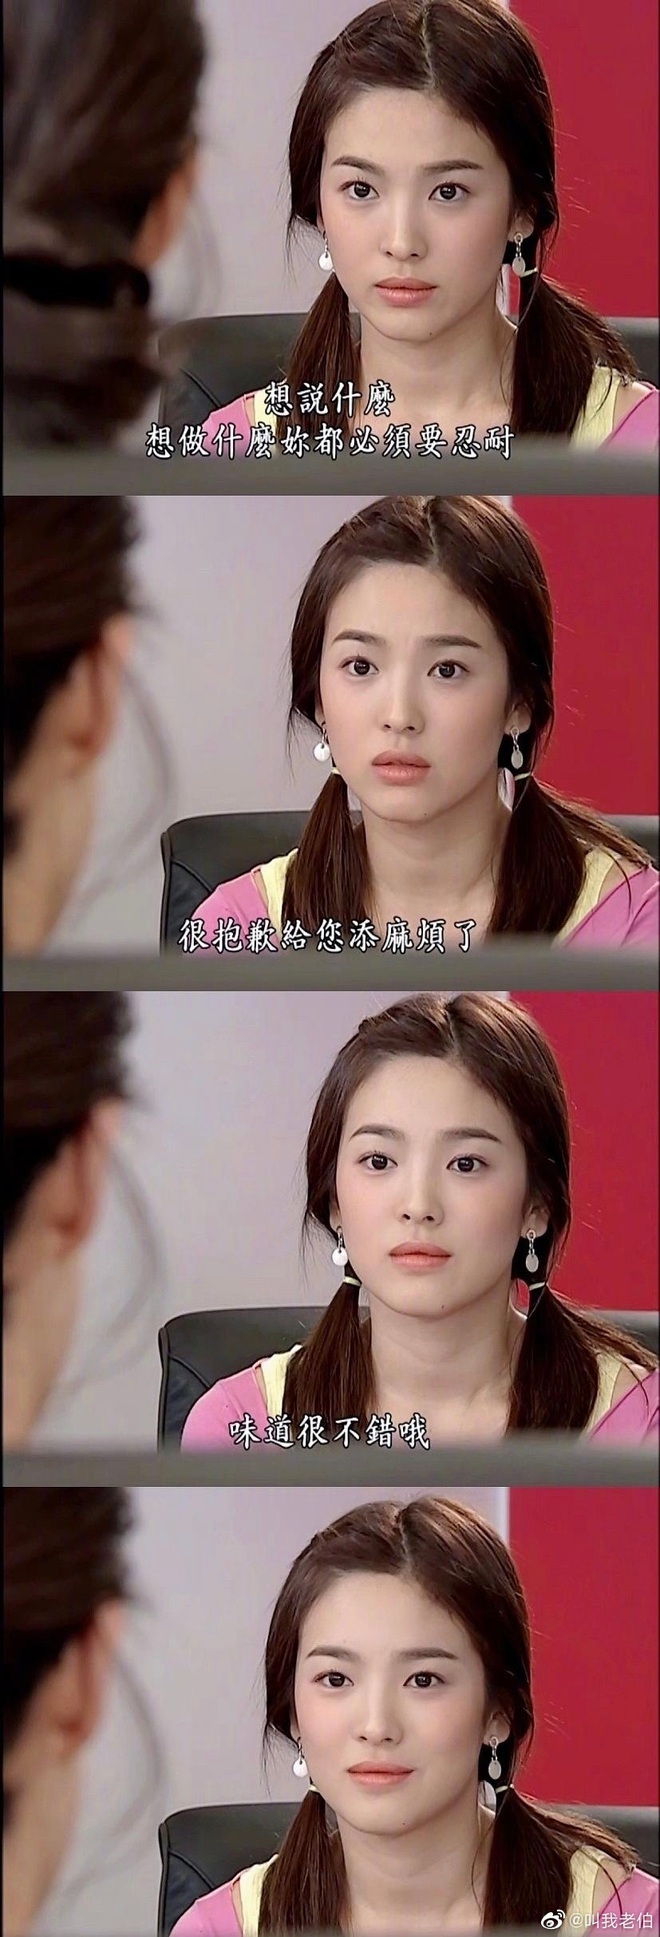 Ngắm lại nhan sắc Song Hye Kyo thuở Full House mới hiểu vì sao Hyun Bin, Song Joong Ki mê nàng như điếu đổ - Ảnh 6.